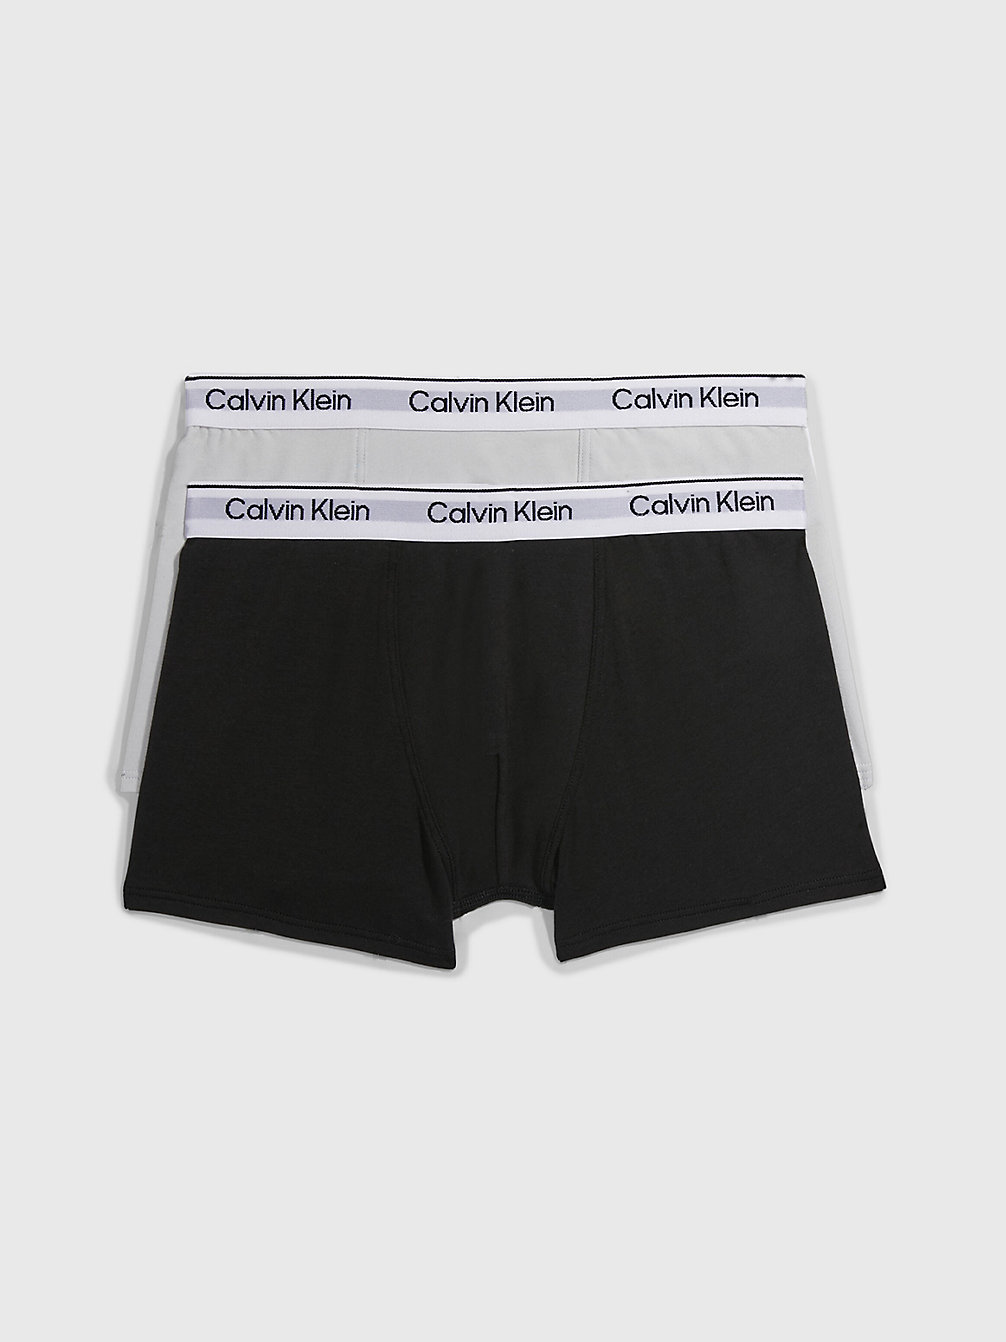 STONEGREY/PVHBLACK > 2er-Pack Boxershorts Für Jungen - Modern Cotton > undefined boys - Calvin Klein